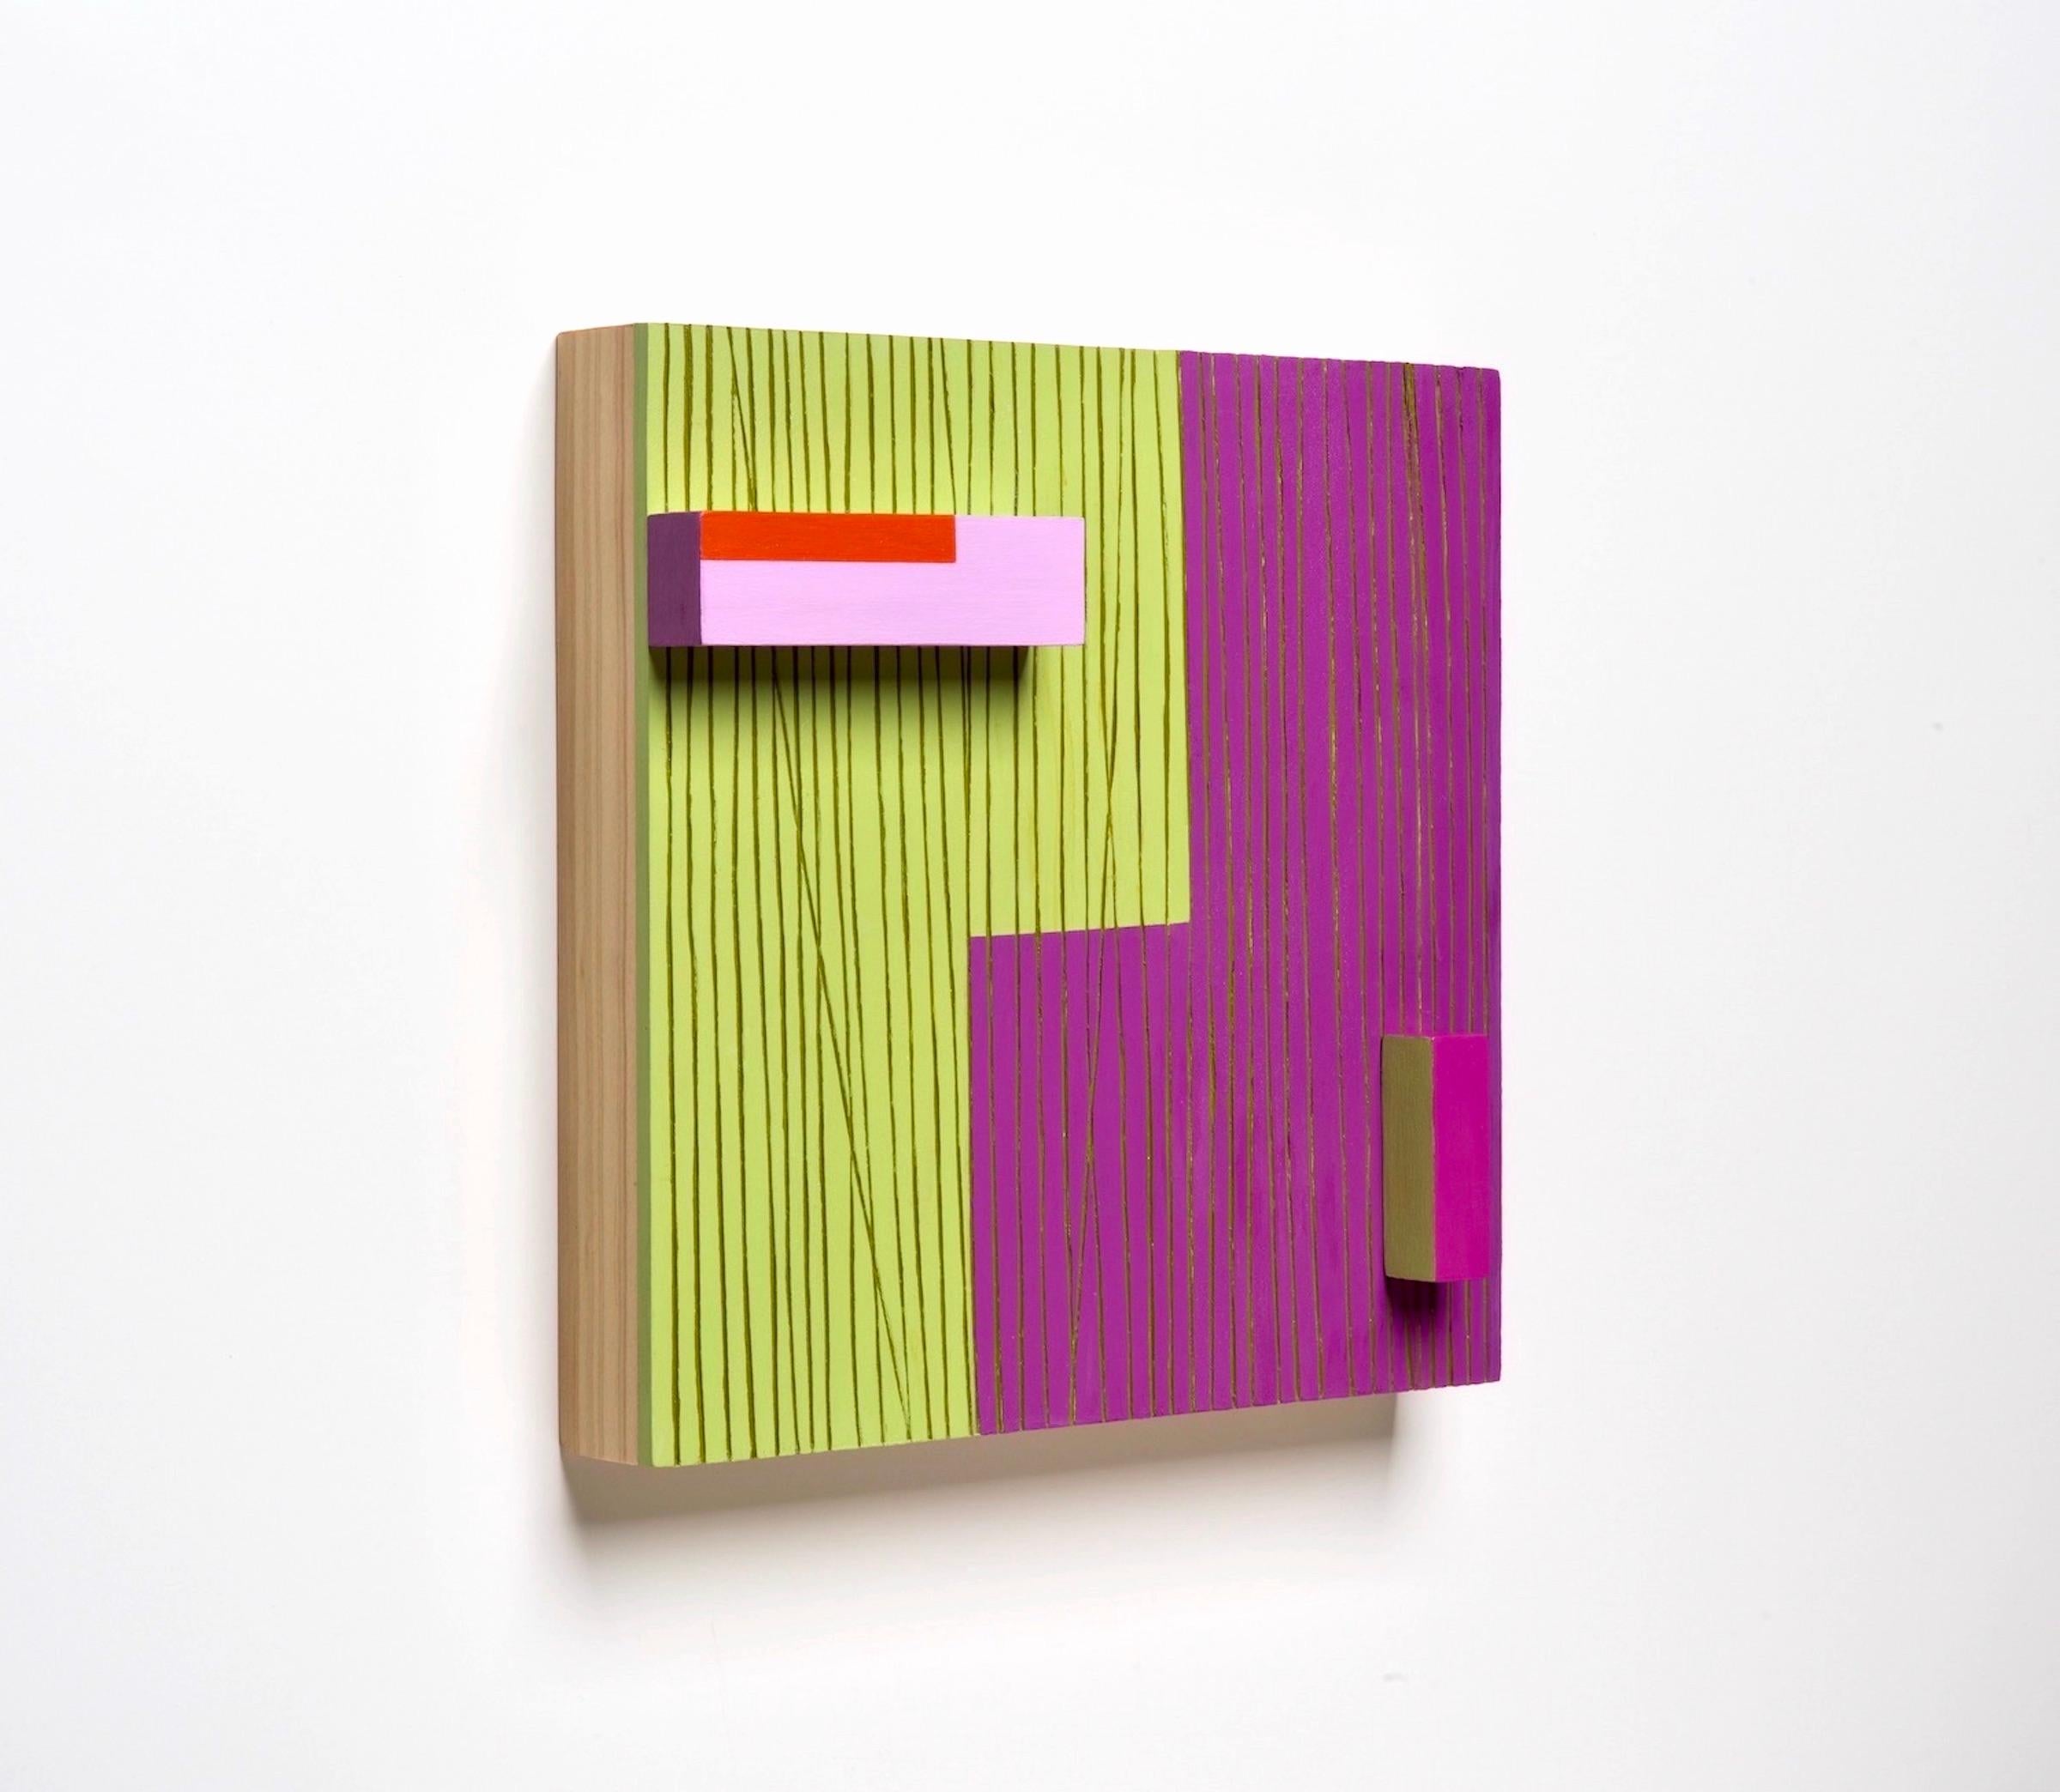 Un chemin qui existe - Sculpture murale abstraite vert, violette, minimalisme, bois, mcm - Painting de Terri Fridkin